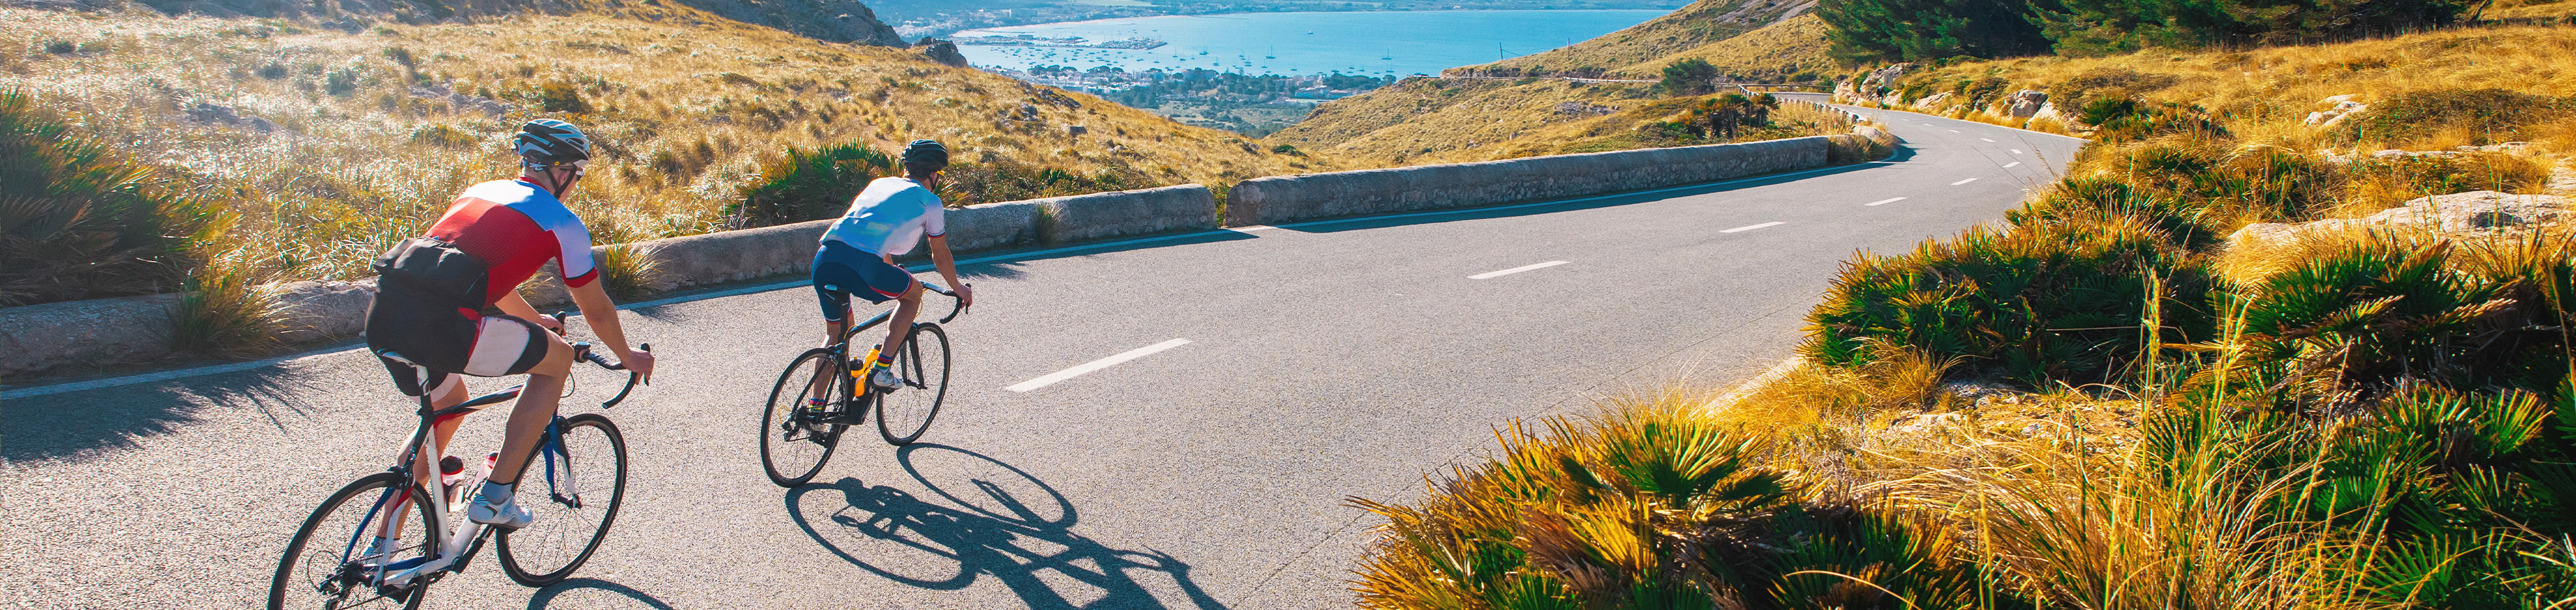 Zwei Rennradfahrer auf einer langen Straße und im Hintergrund das blaue Meer.